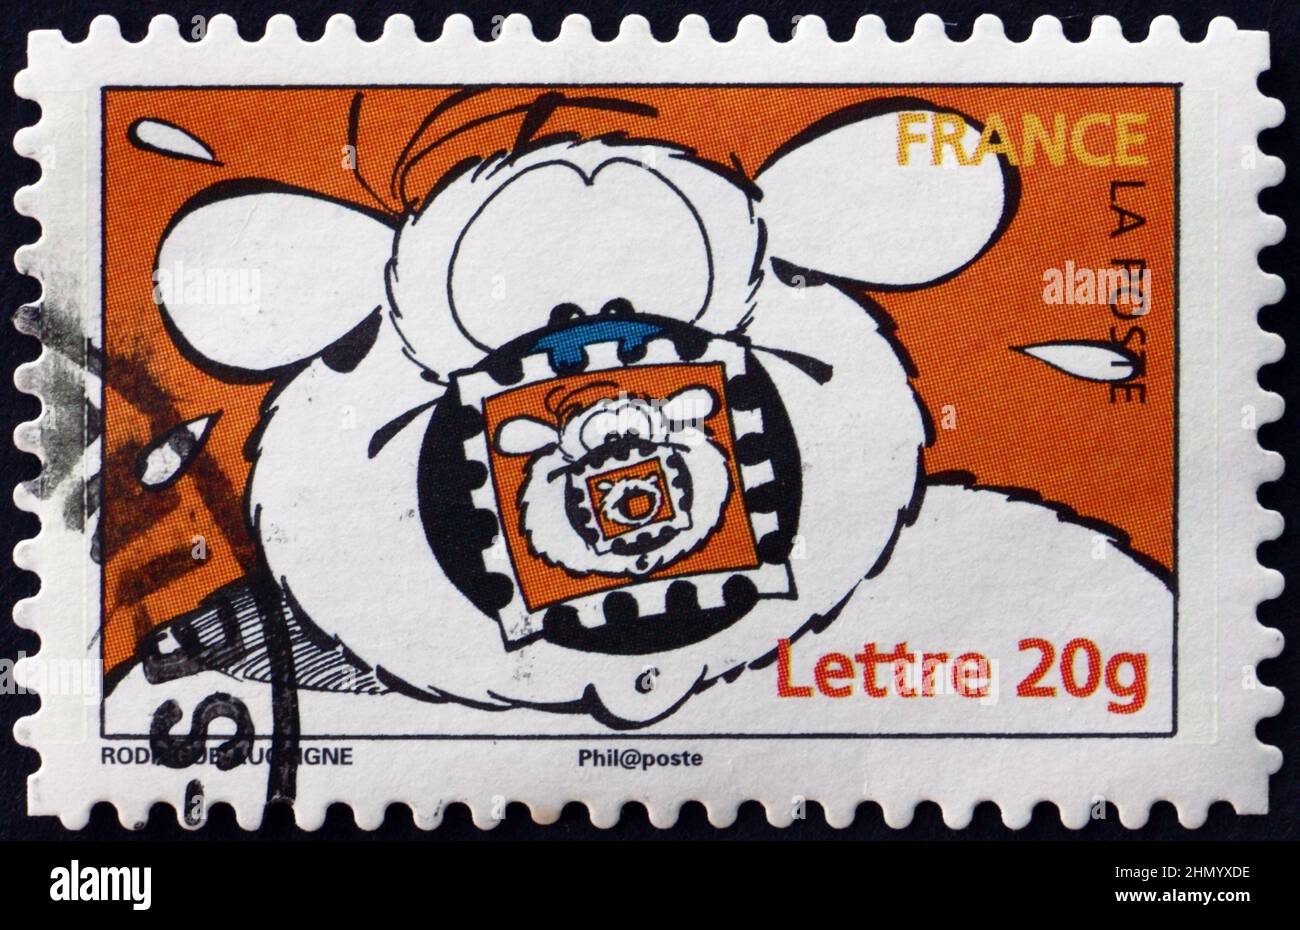 FRANCIA - CIRCA 2006: Un francobollo stampato in Francia mostra Cubitus, Comics di Michel Rodrigue Pierre Aucaigne, circa 2006 Foto Stock